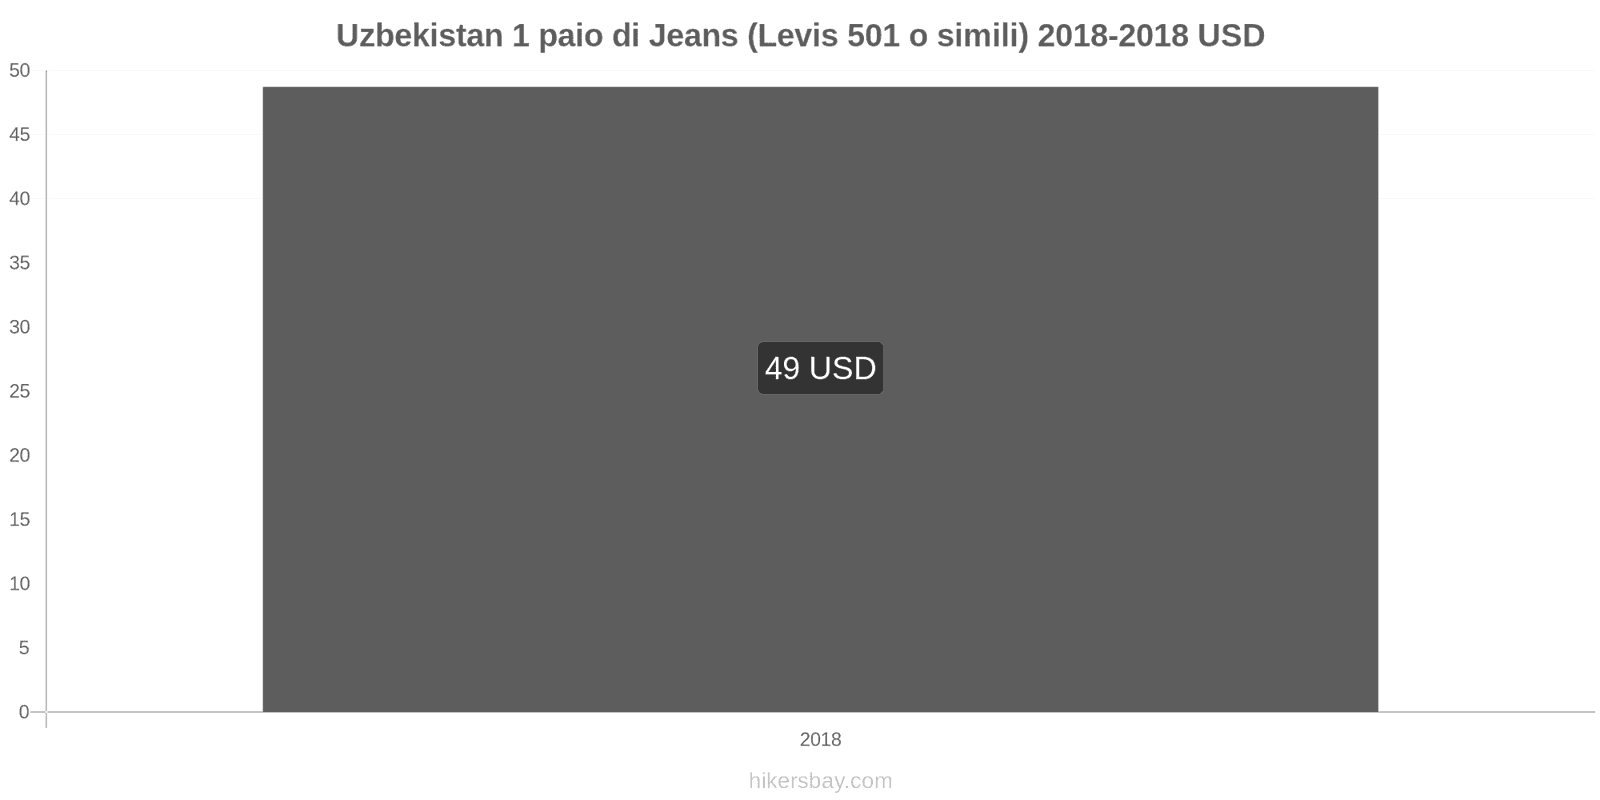 Uzbekistan cambi di prezzo 1 paio di jeans (Levis 501 o simili) hikersbay.com